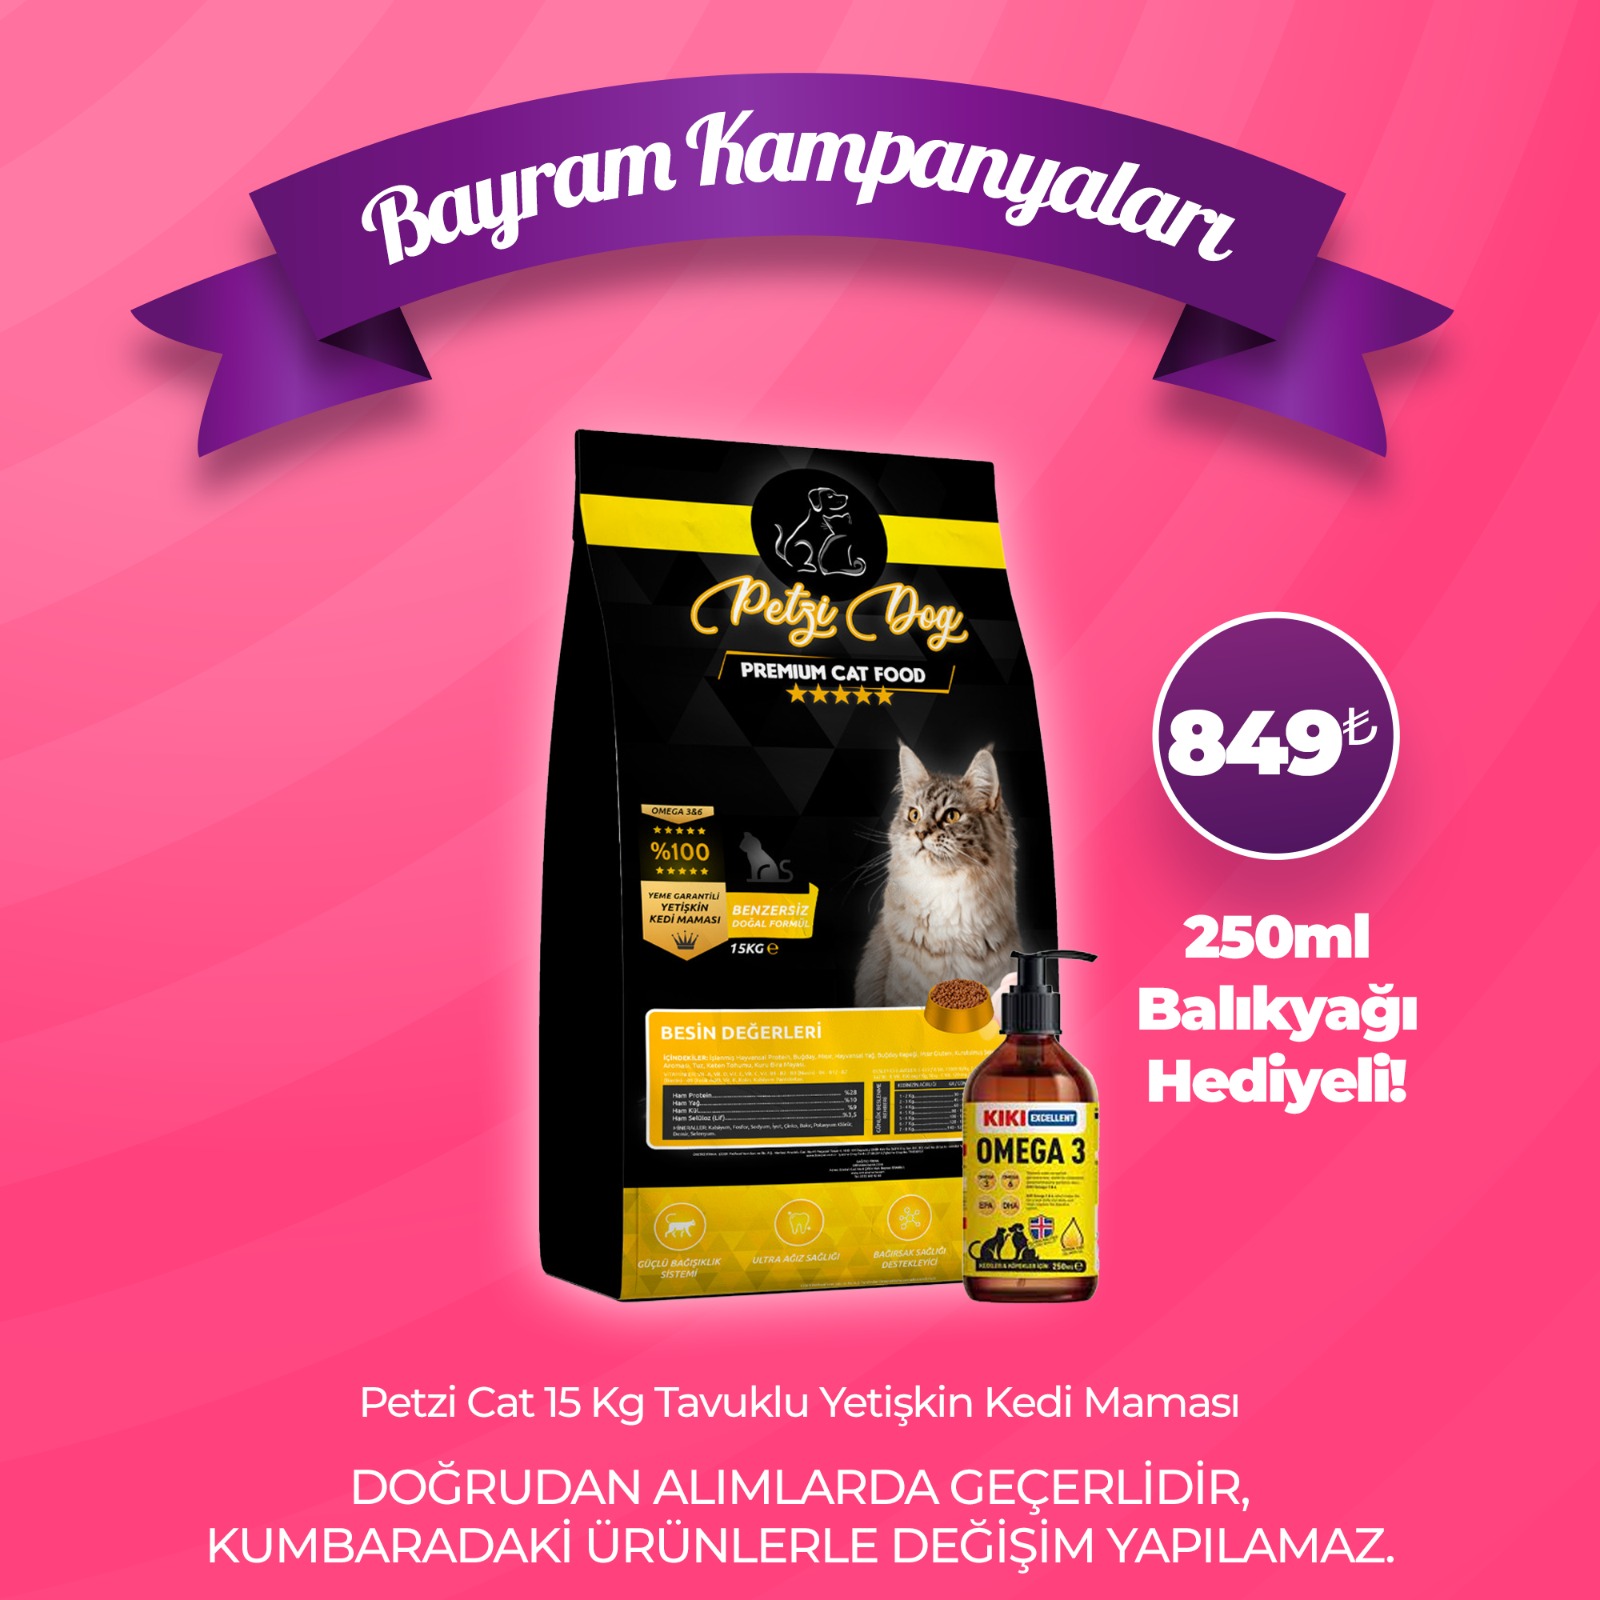 Petzi Cat Premium 15 Kg Tavuklu Yetişkin Kedi Maması - Kiki Excellent 250ml Omega 3 Balık Yağı Hediyeli